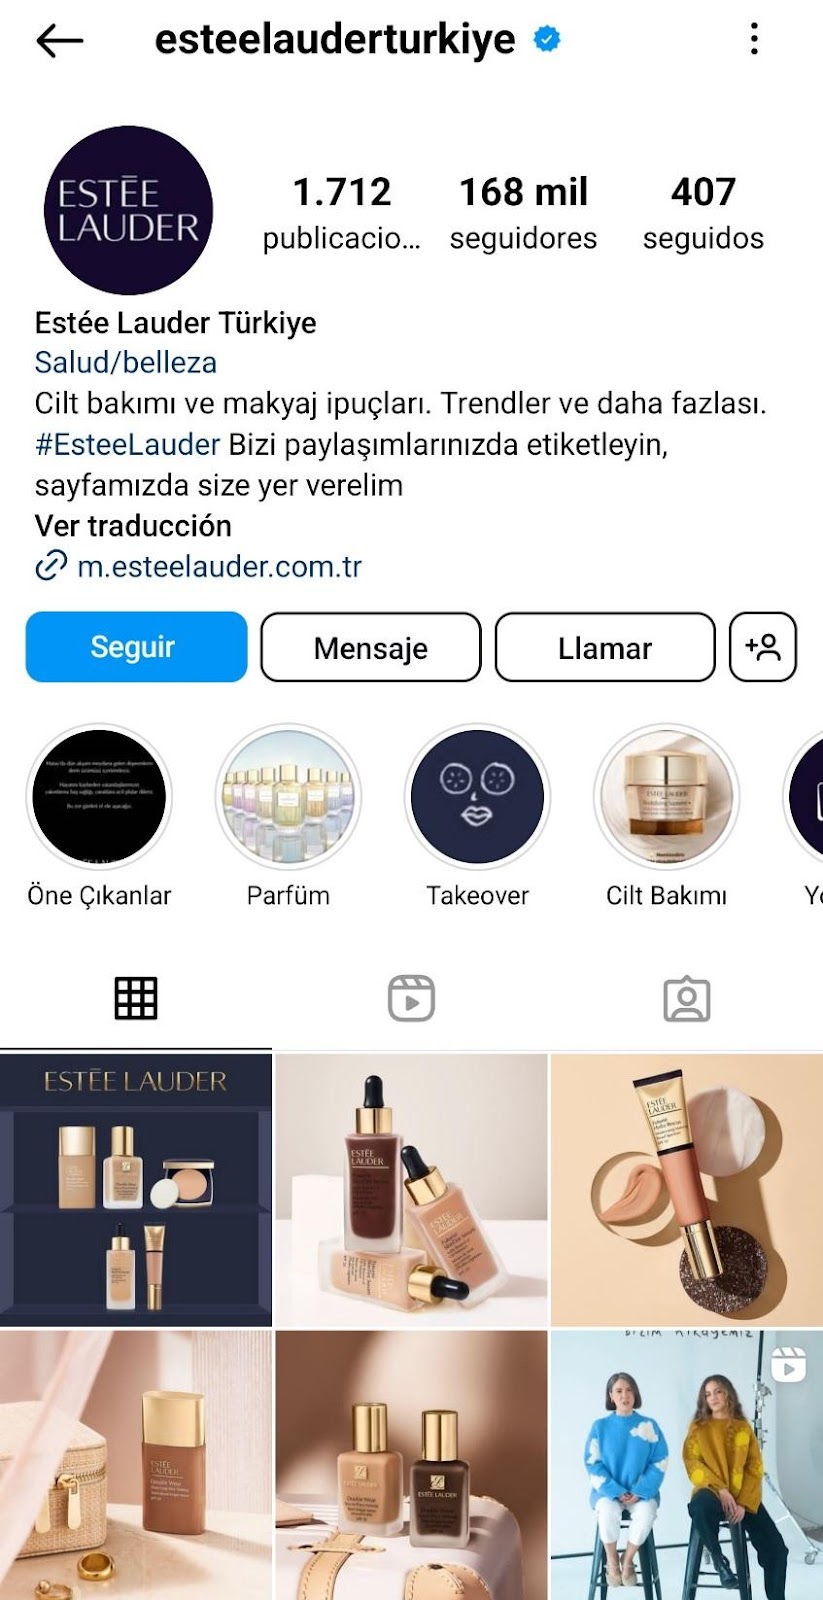 Feed de Instagram de la marca Estee Lauder de Turquia